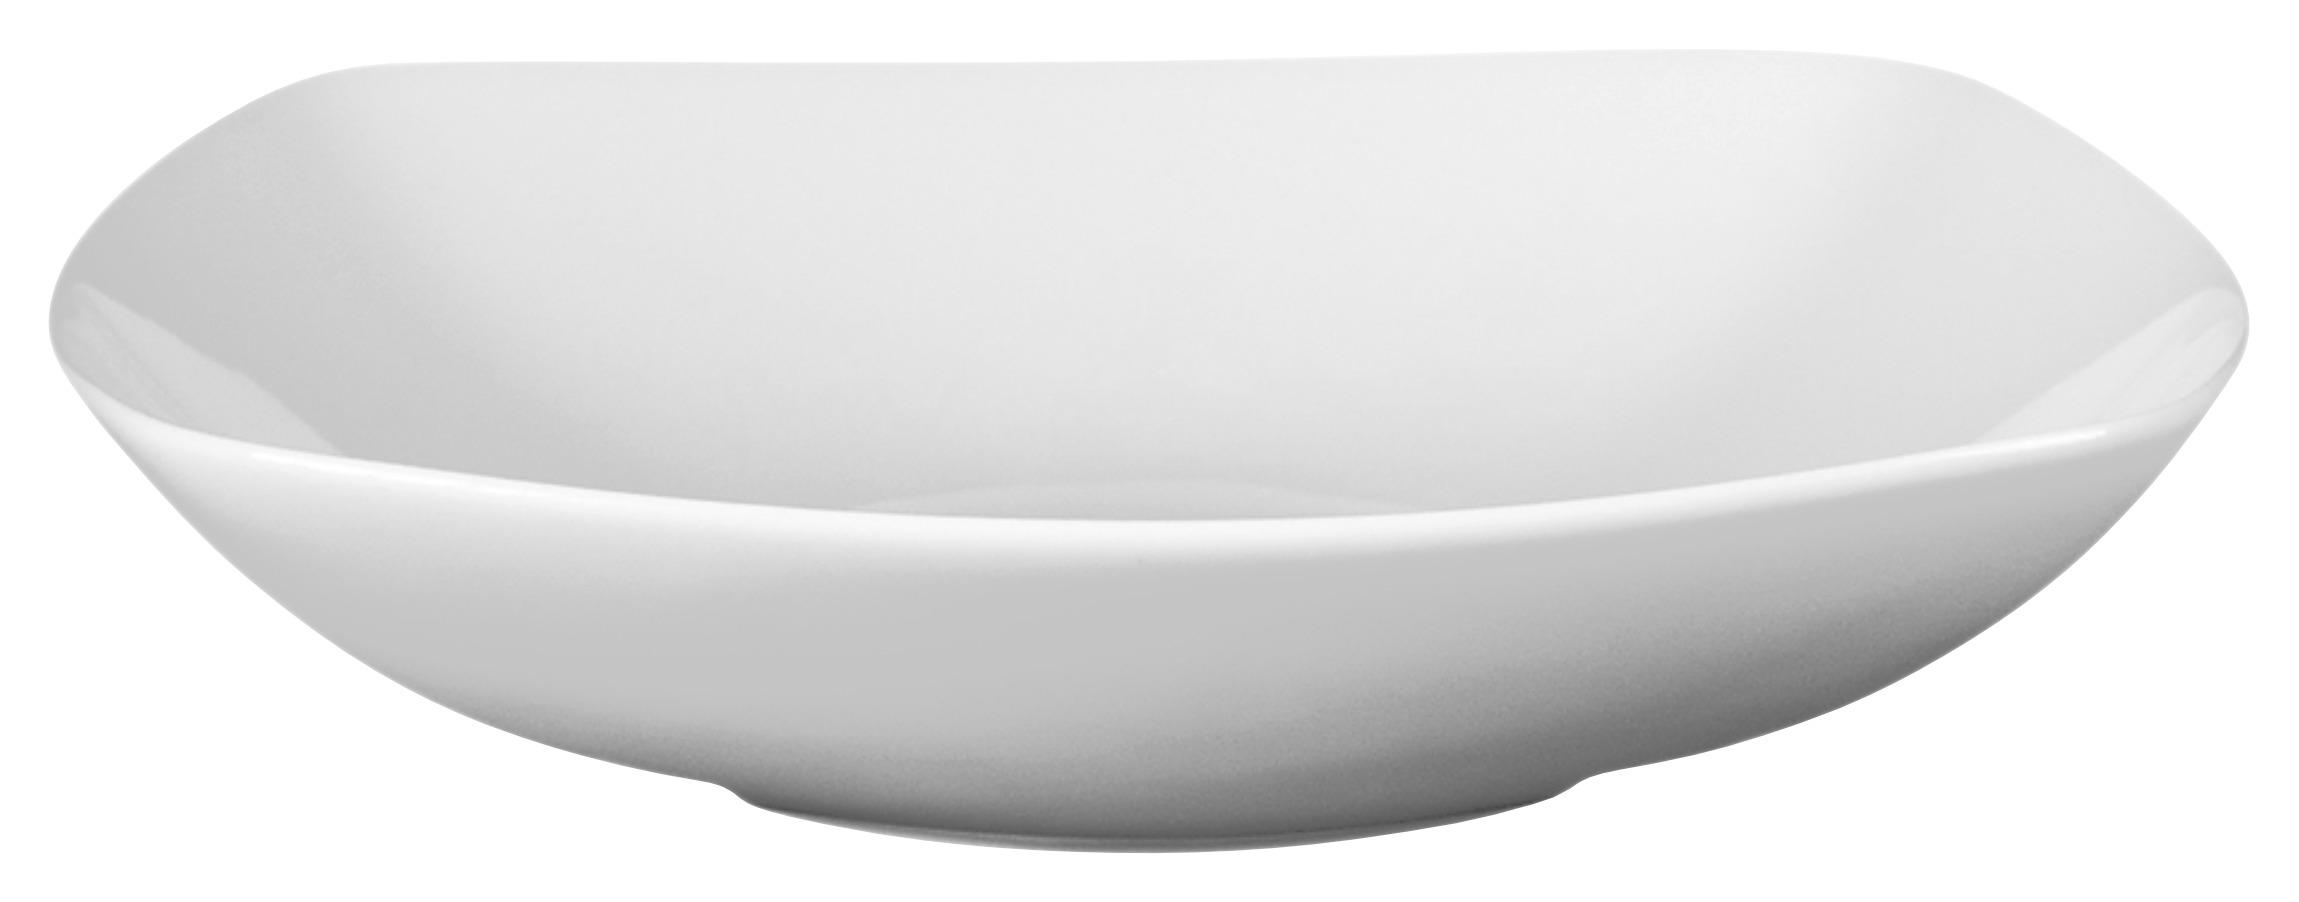 Suppenteller Porzellan Weiß Maya ca. 20 cm - Weiß, MODERN, Keramik (20/20cm) - Luca Bessoni